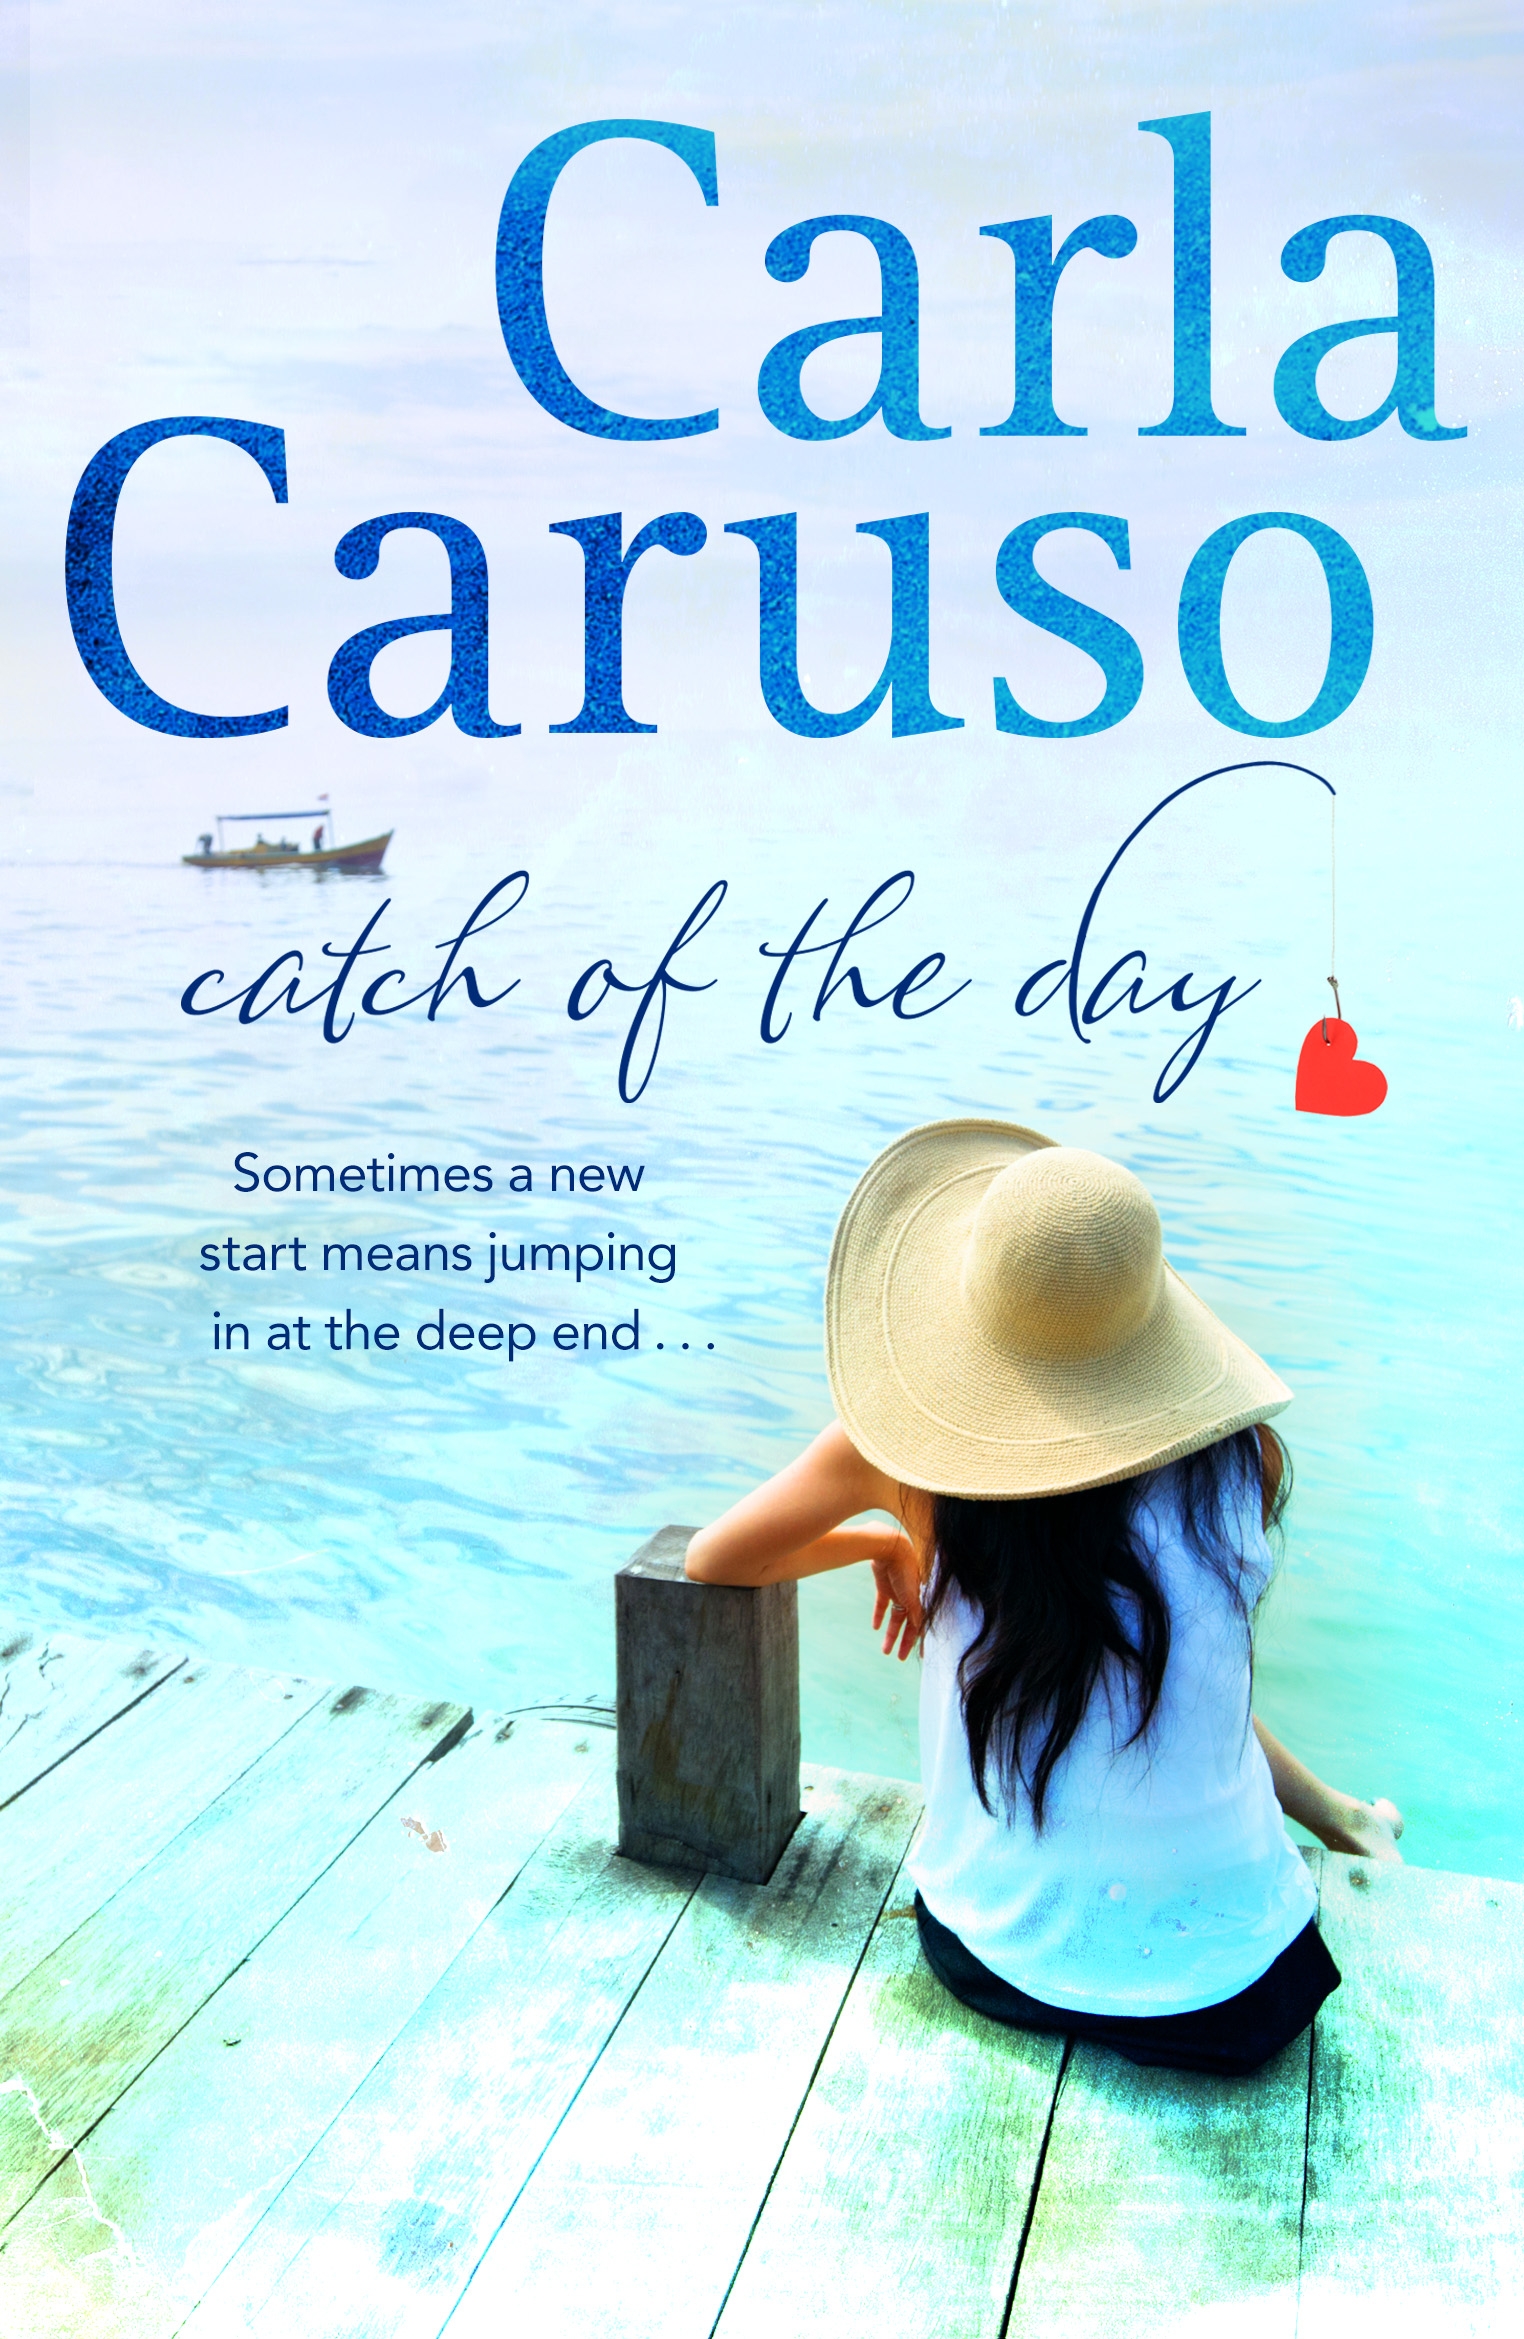 Catch of the Day by Carla Caruso - Penguin Books Australia